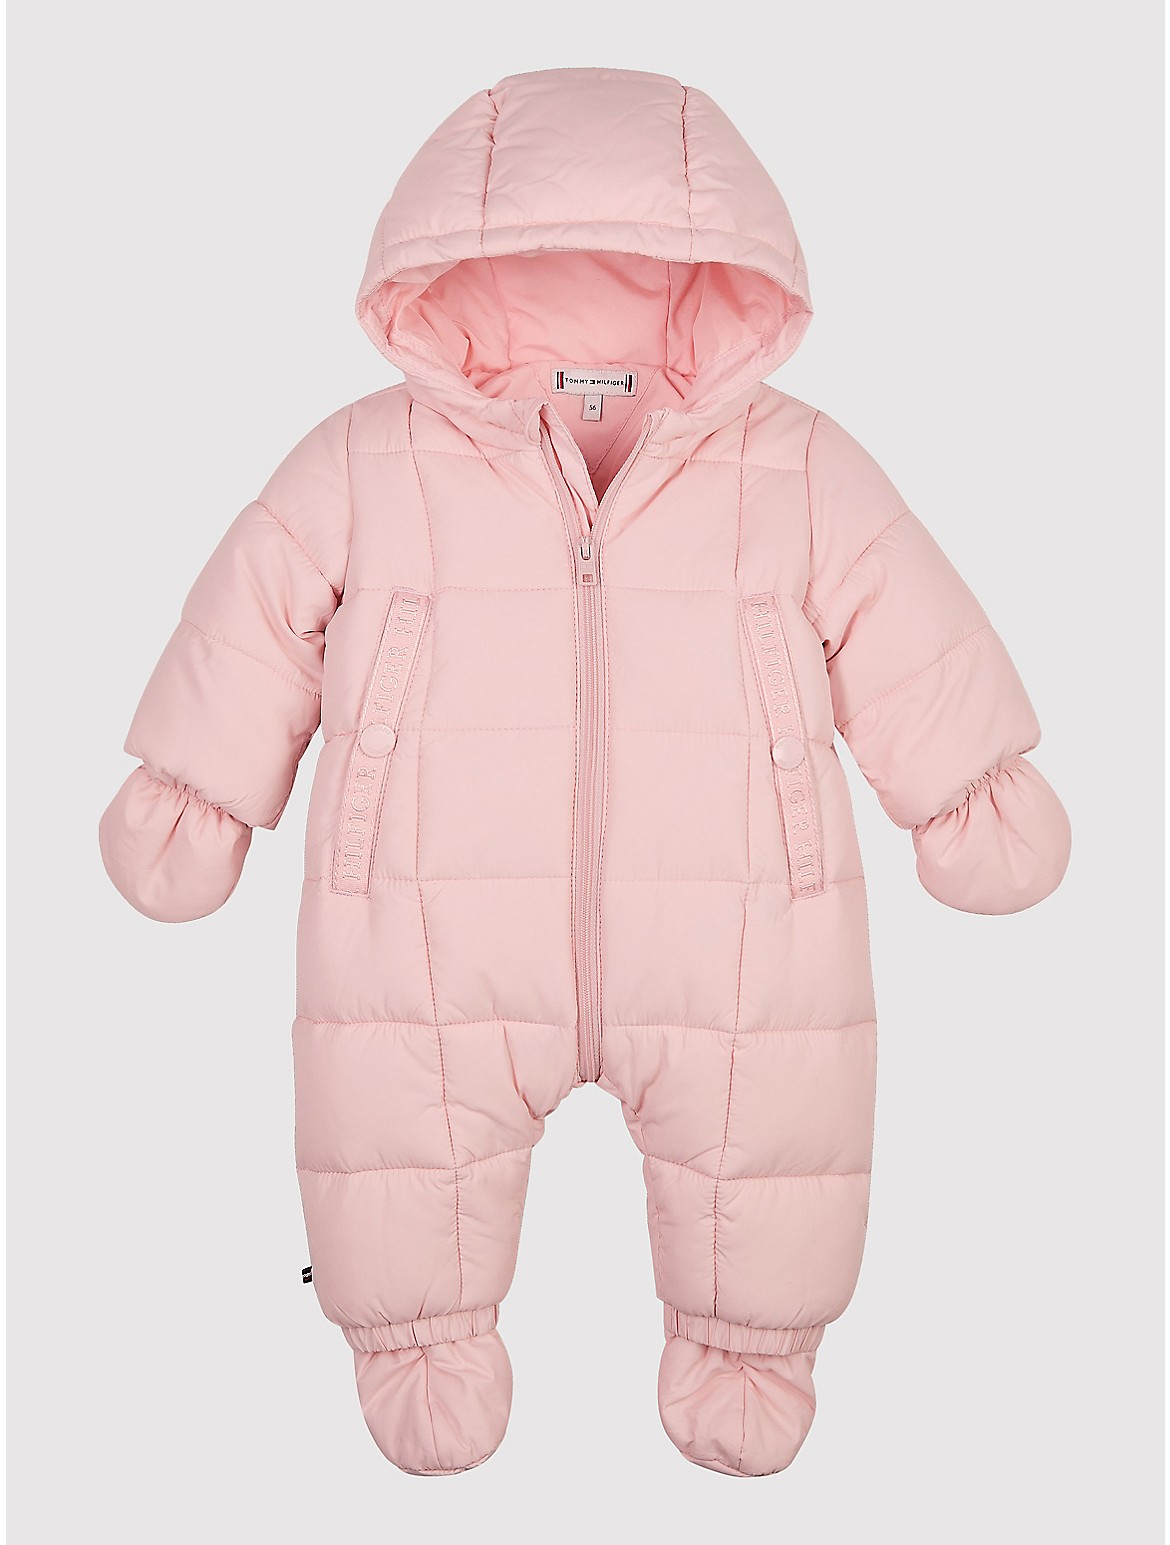 Tommy Hilfiger Babies' Ski Suit Set - Pink - 24M